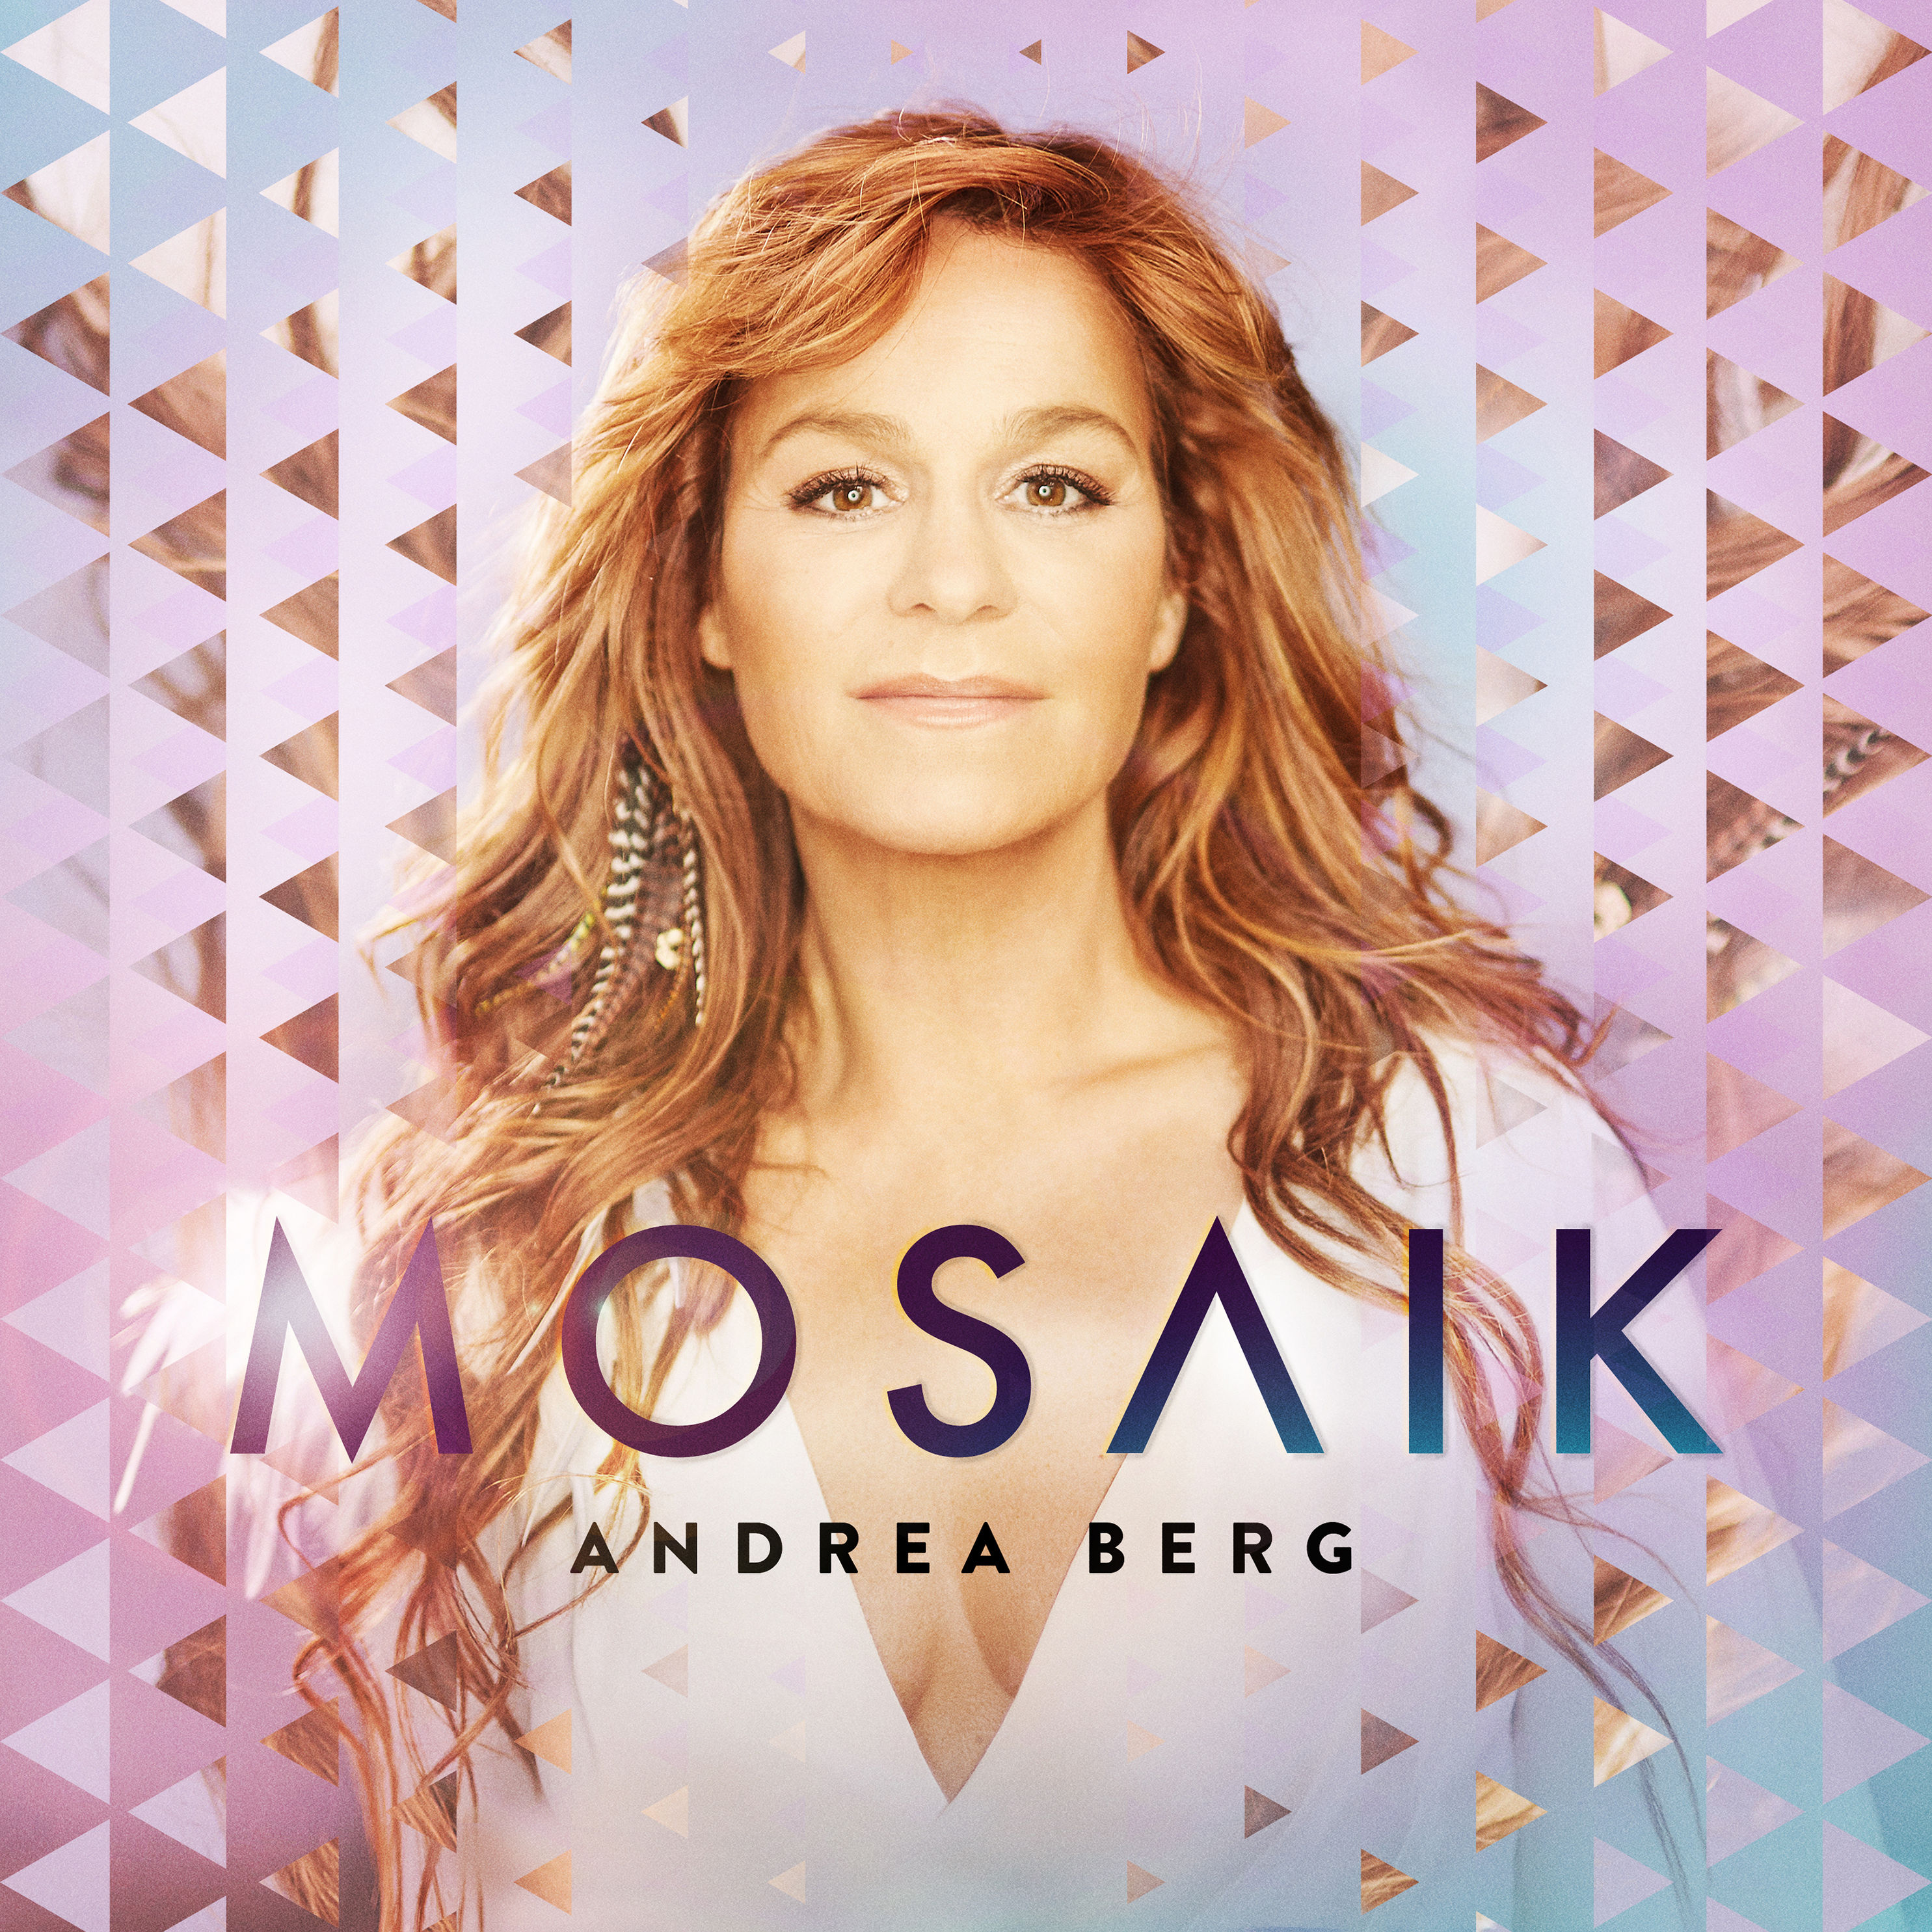 Mosaik CD von Andrea Berg jetzt online bei Weltbild.de bestellen